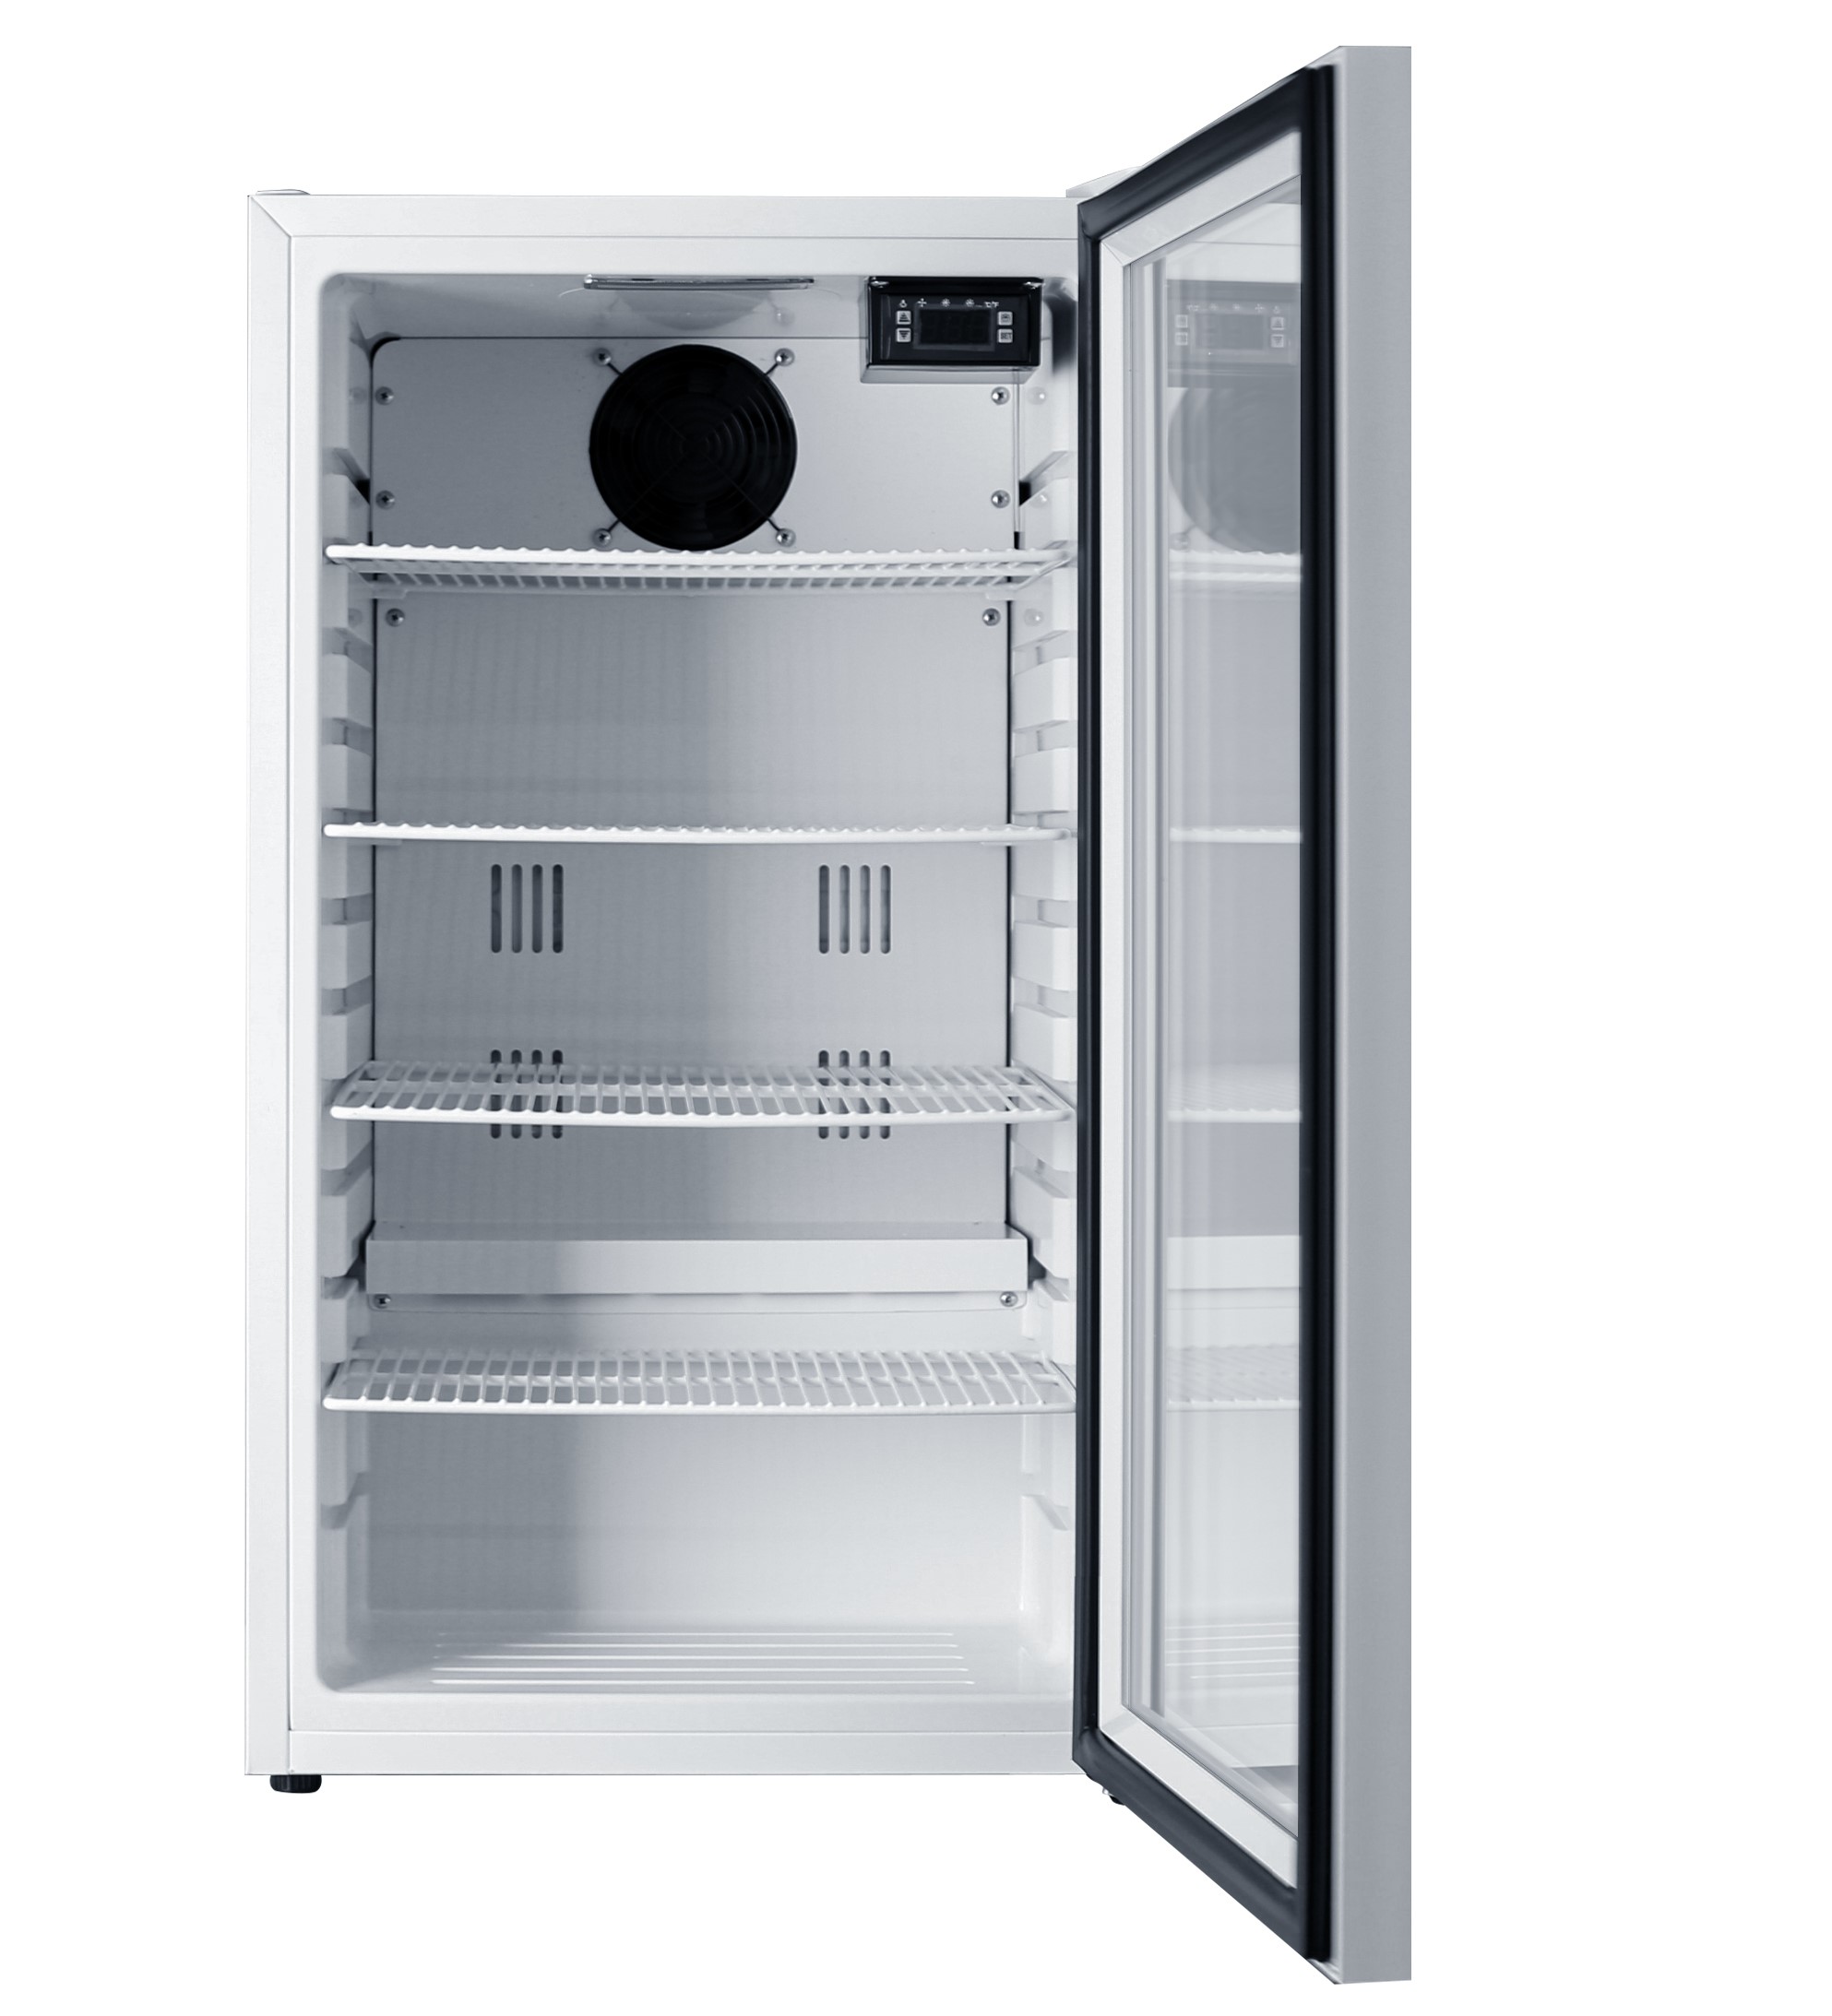 JCMS-324 (1ドア冷蔵ショーケース)  ホワイト 白 JCM ジェーシーエム 冷蔵庫 業務用  軒先・車上渡し 送料無料※地域条件有 - 1